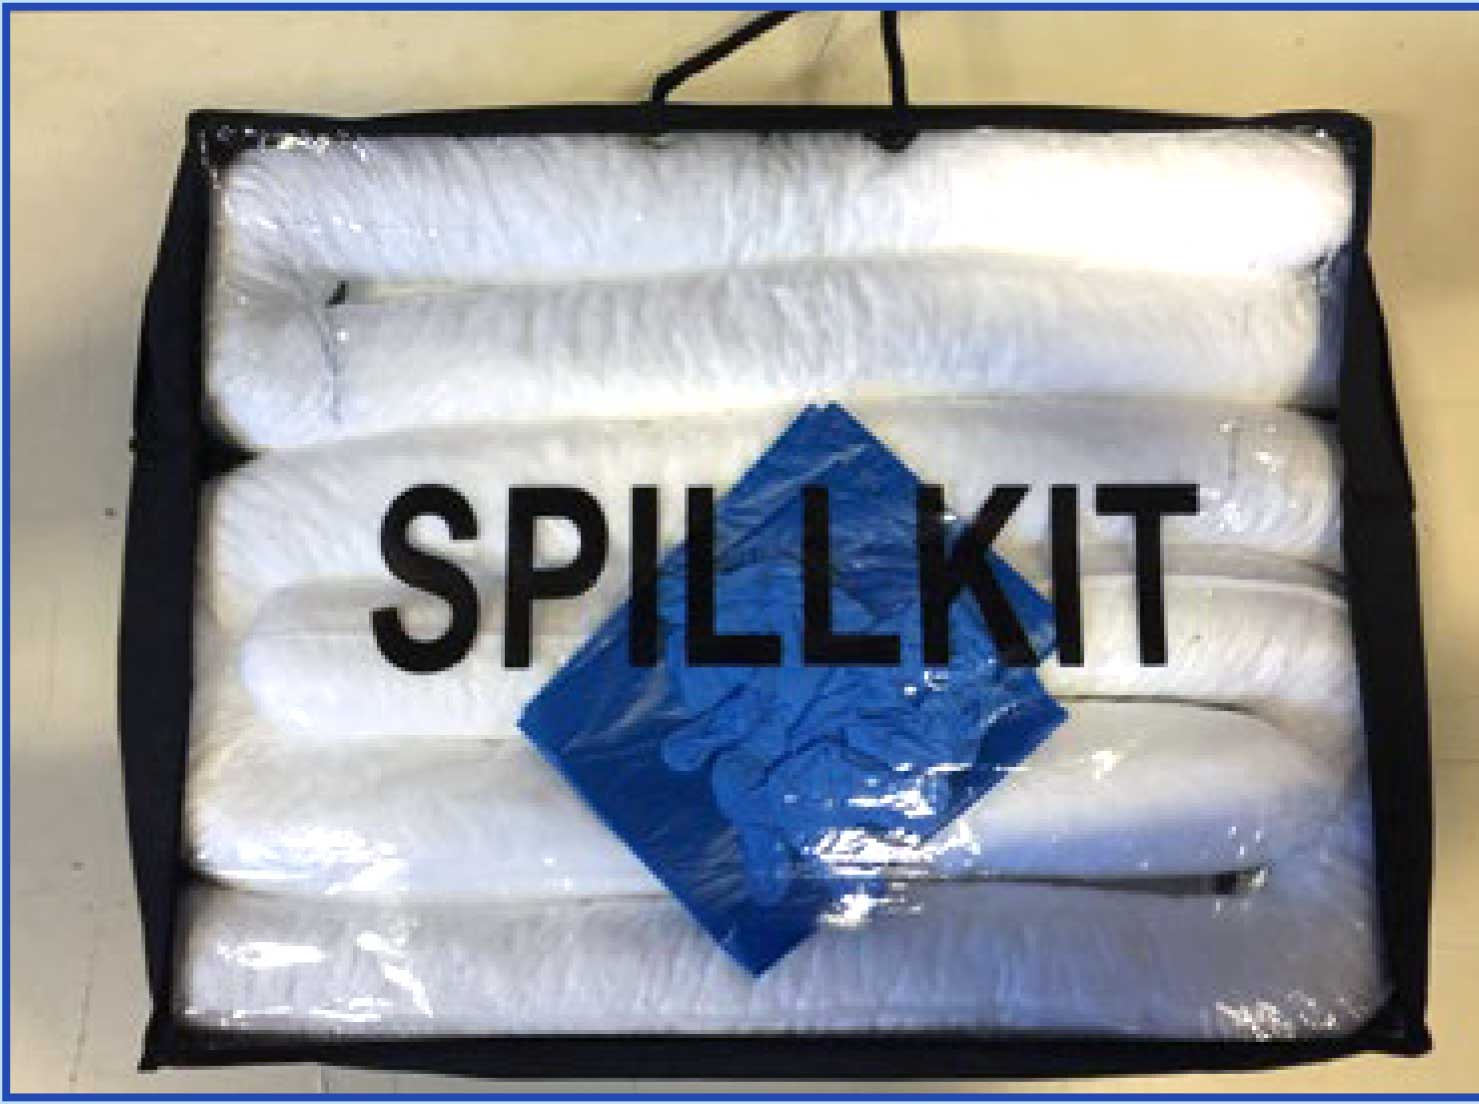 Spillkits behoren tot de Pirtek Milieu-service producten van Pirtek 